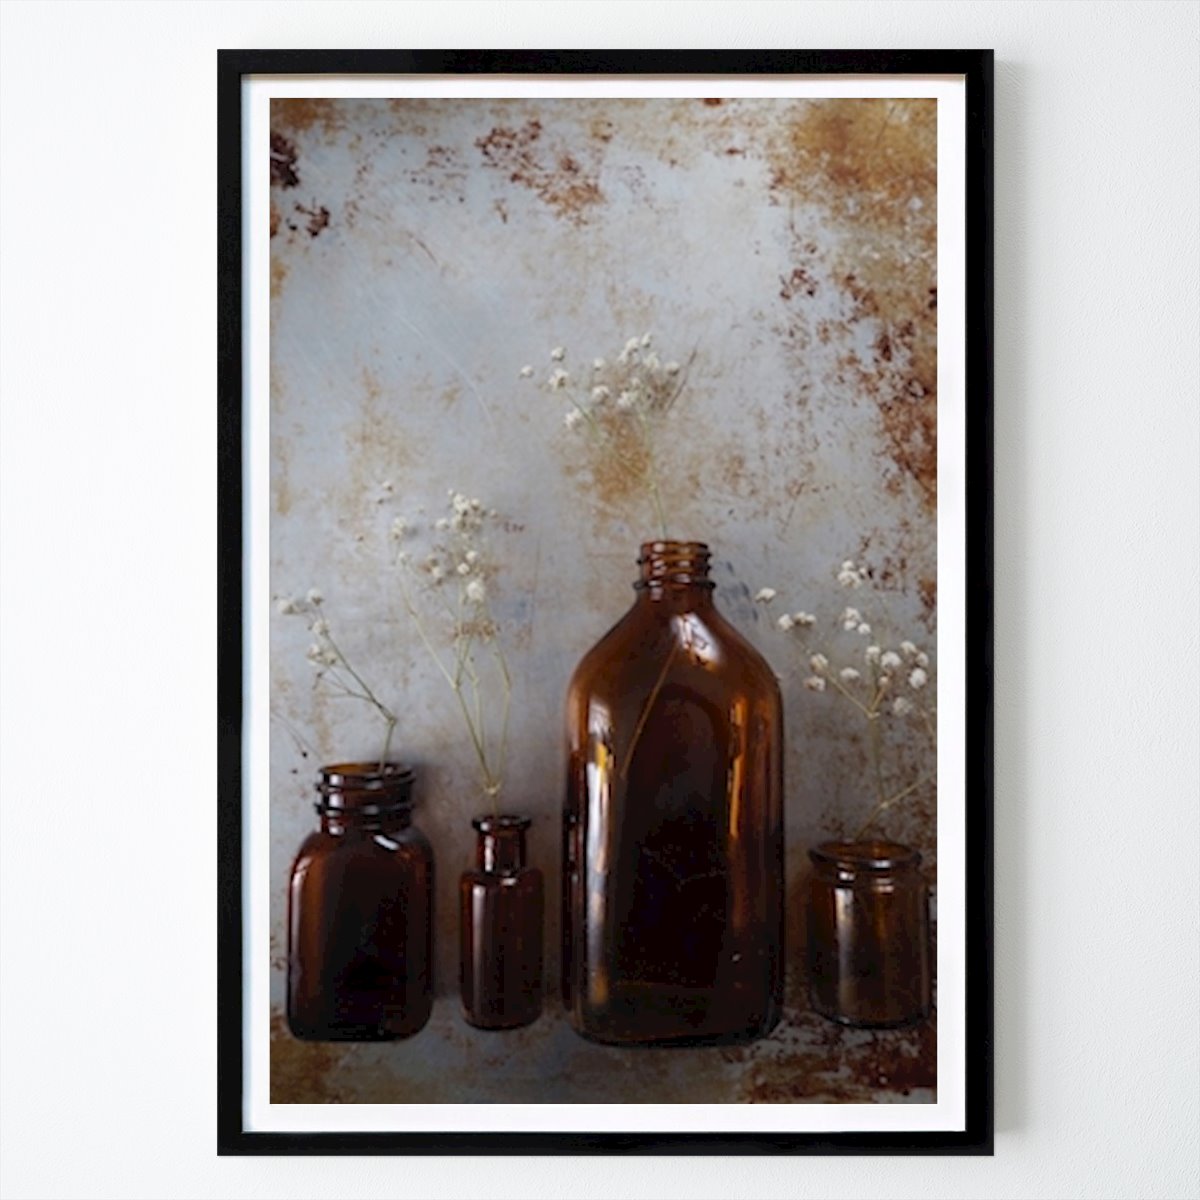 Poster: Blumen und Flaschen von Milla Ek von Printler